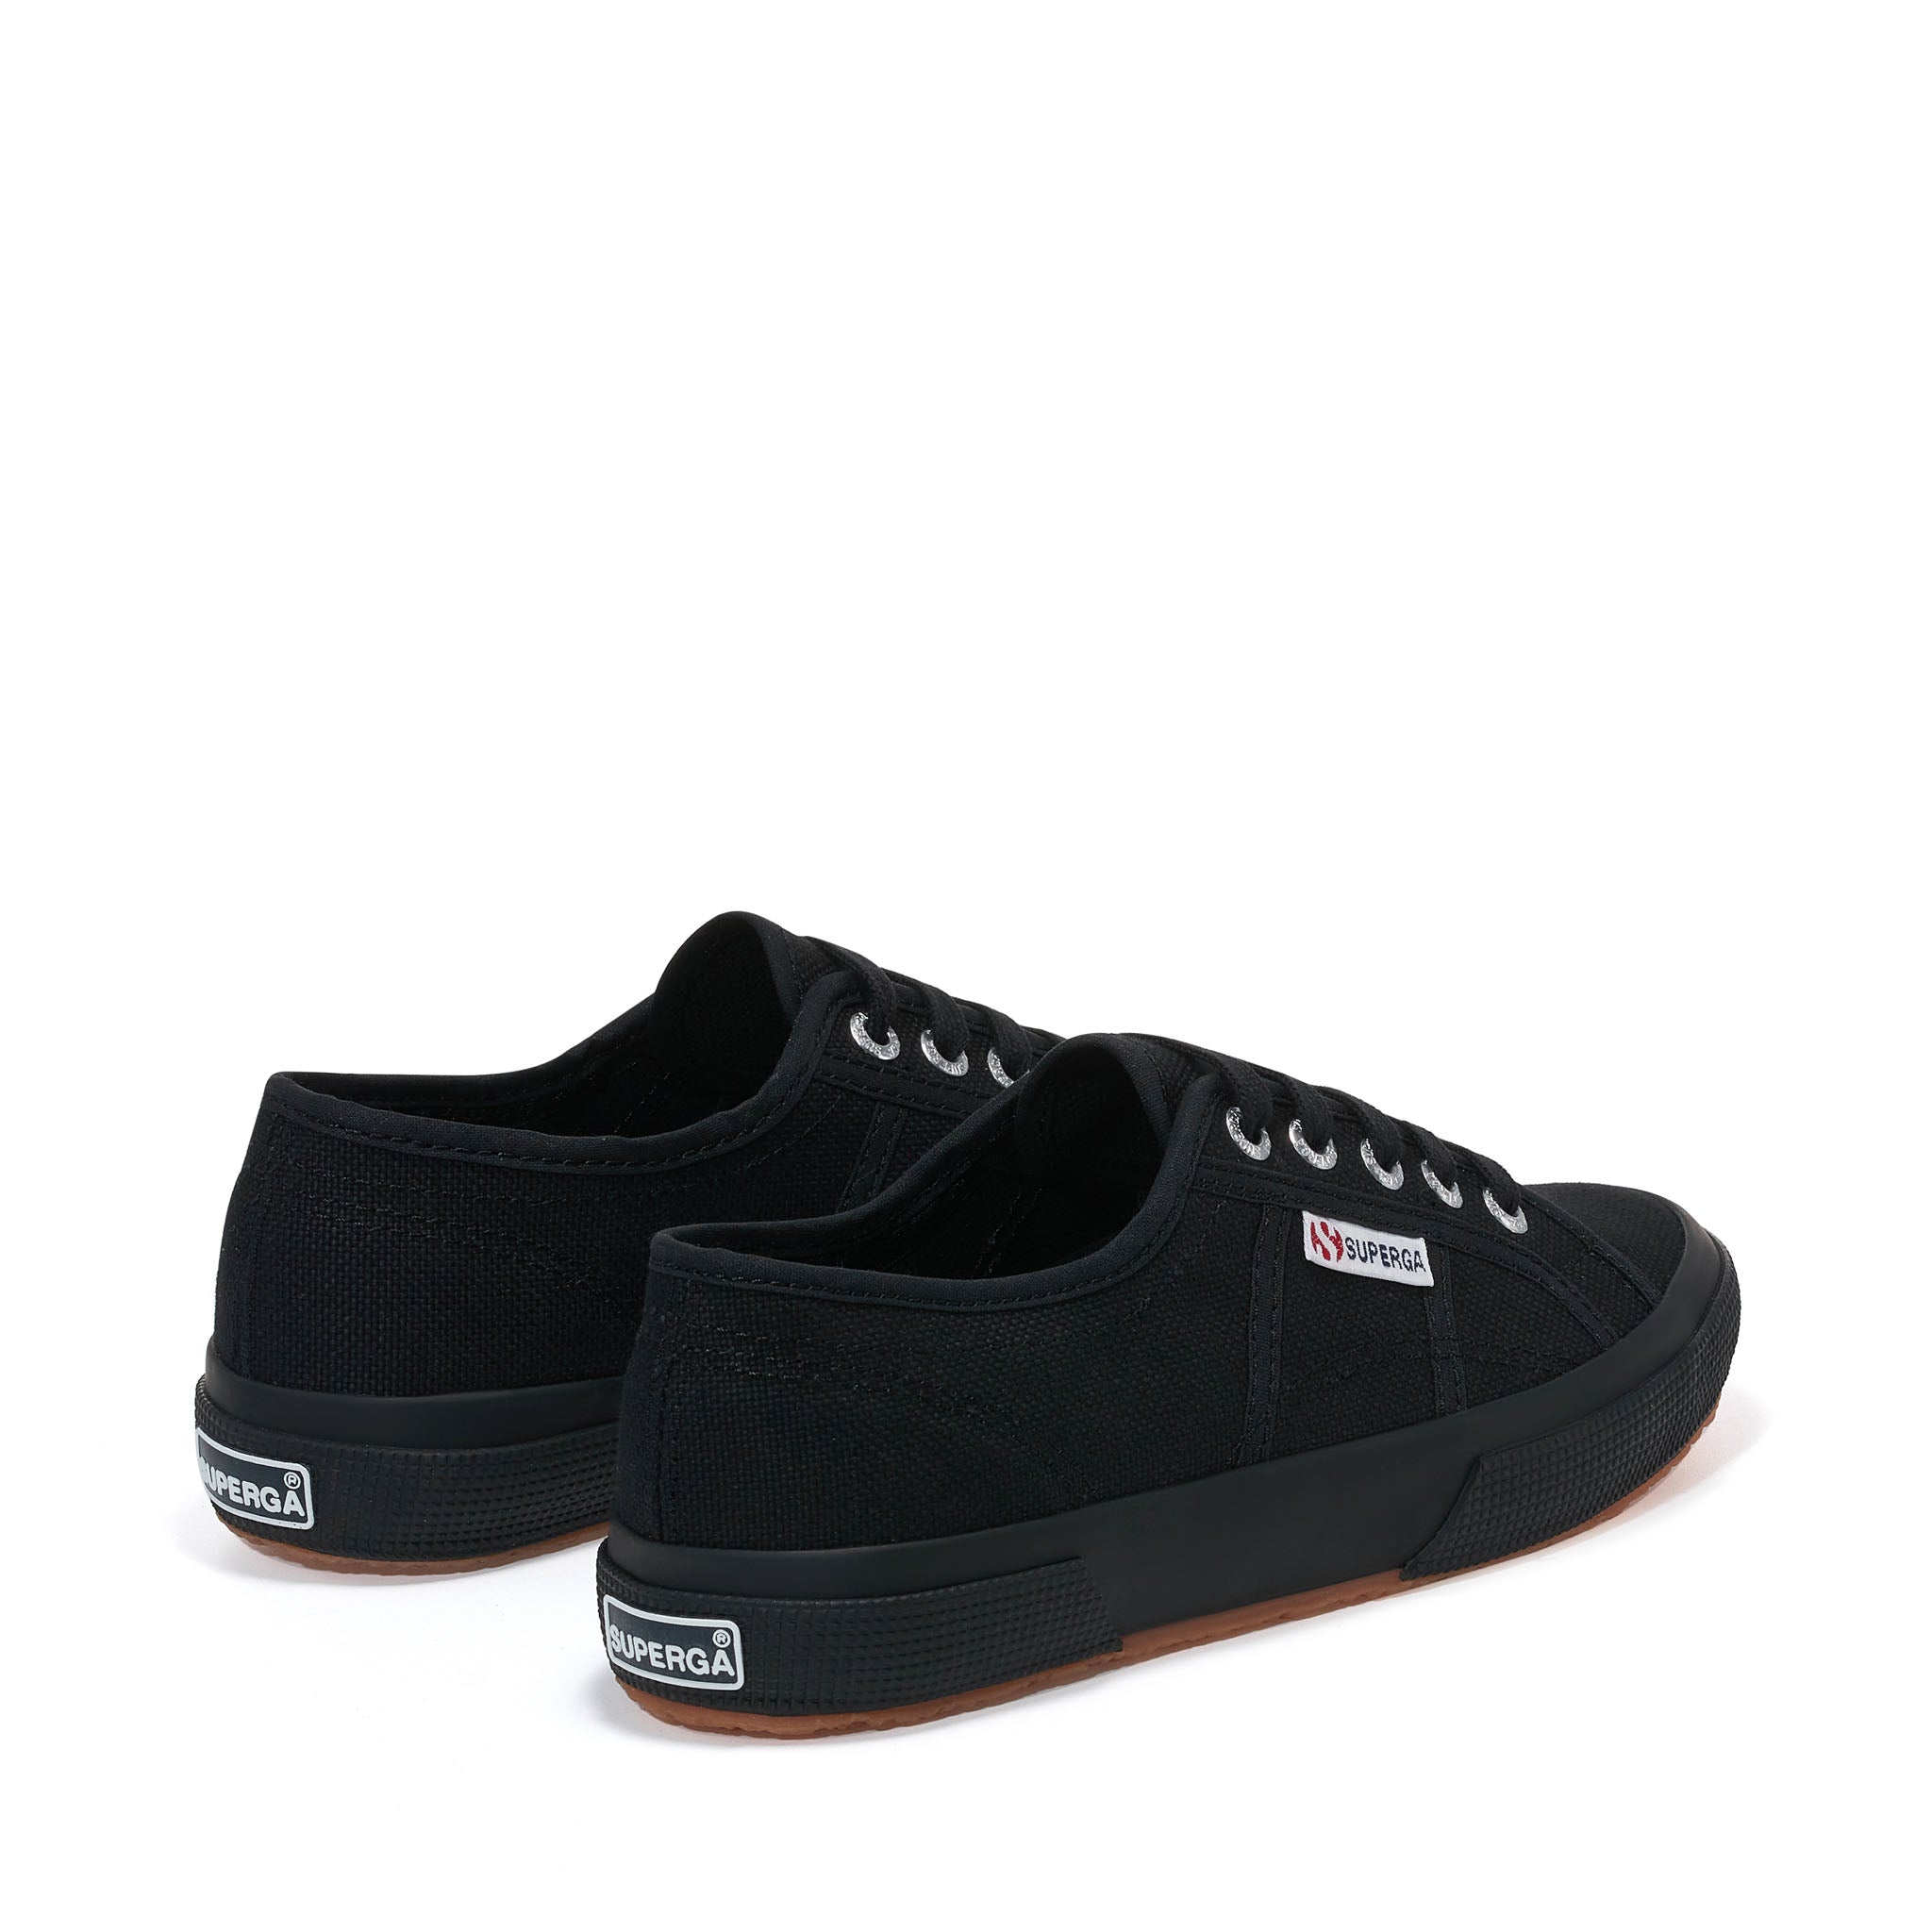 Superga 2750 Cotu Classic Sneakers - Full Black. Back view.